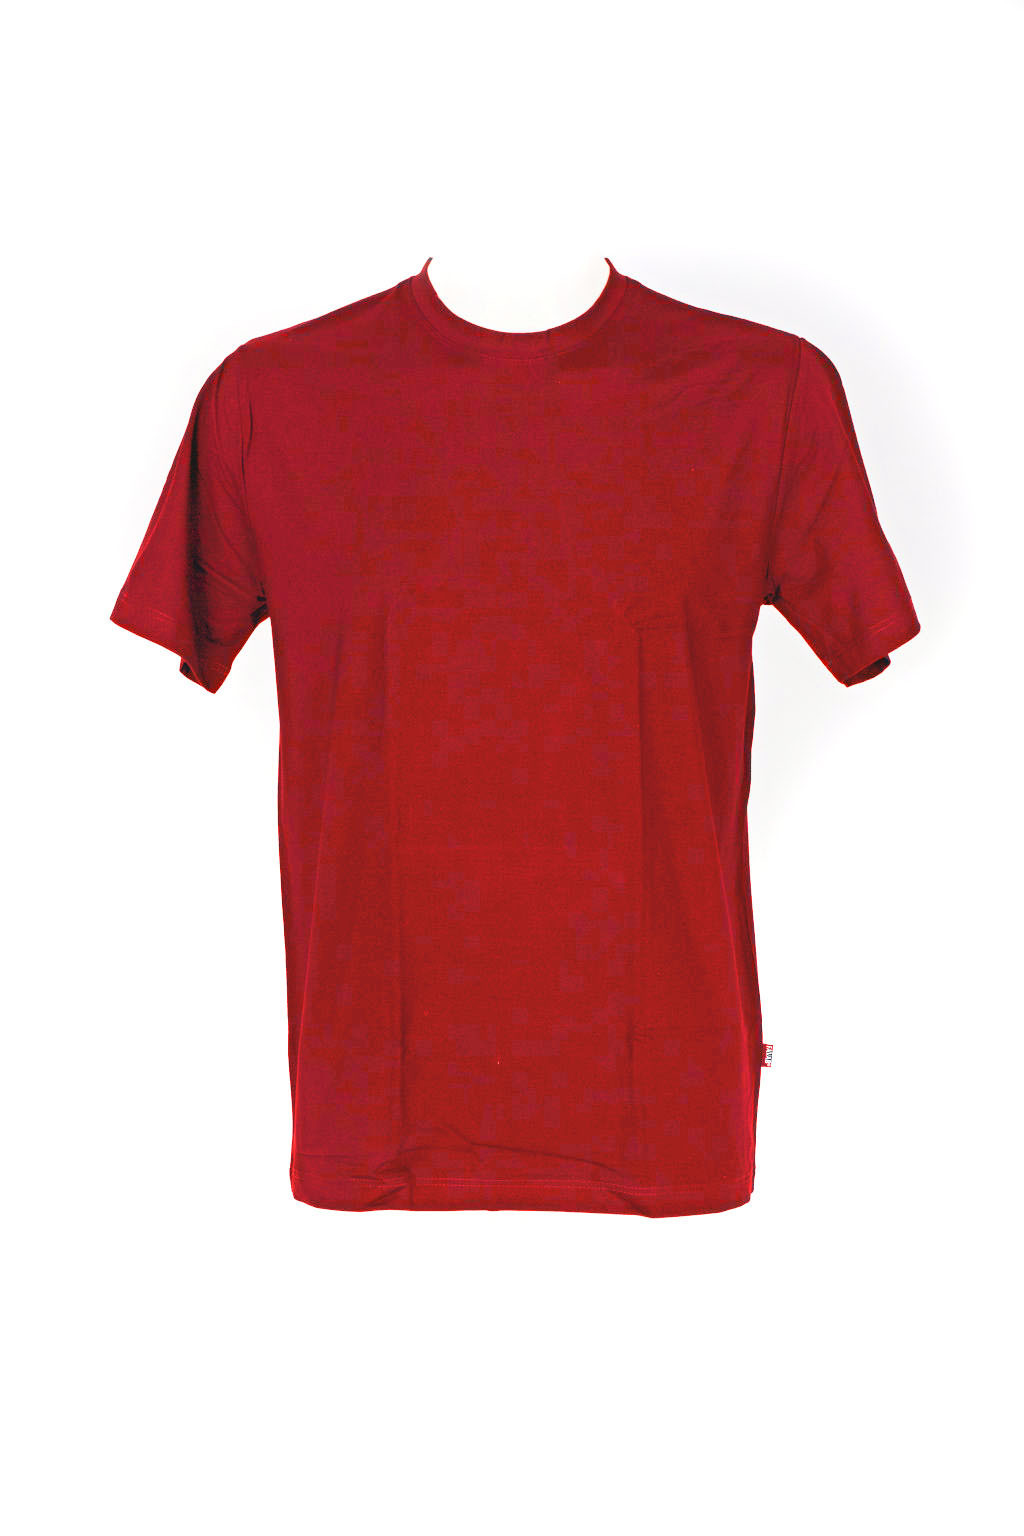 Pánské tričko Paul červené - Favab červená XXL